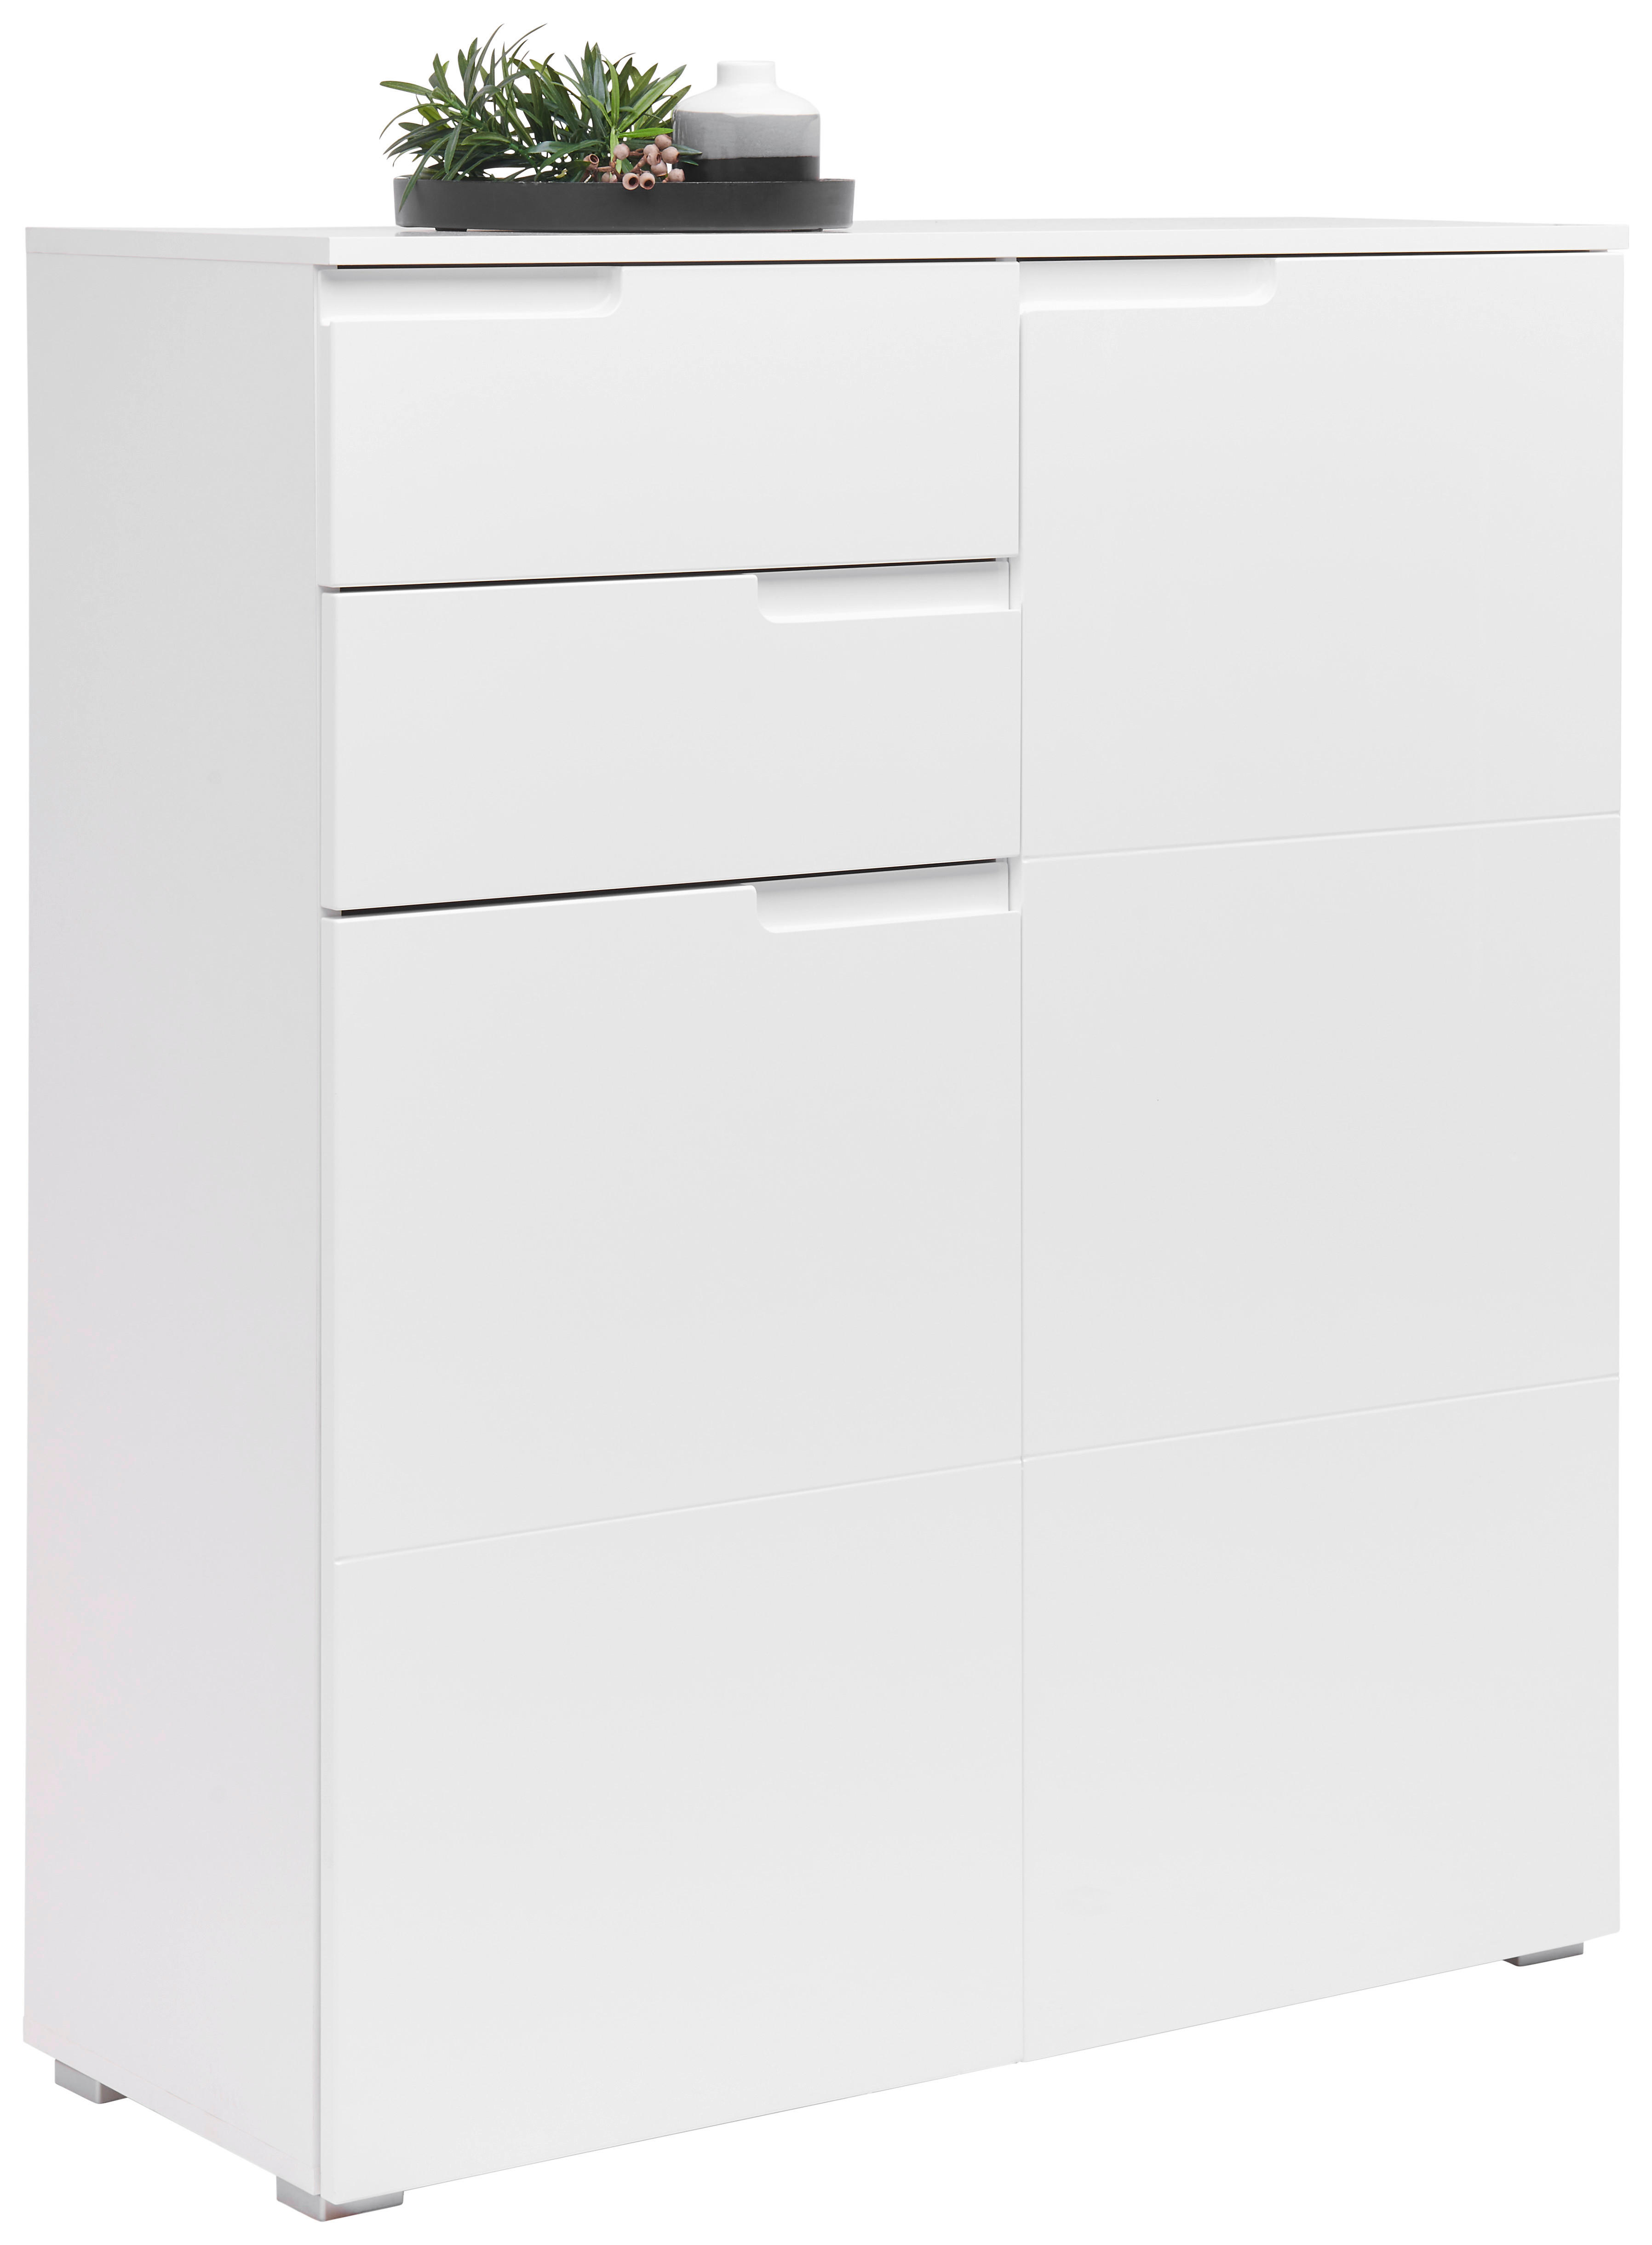 KOMMODE 100/119/40 cm  - Silberfarben/Weiß, Design, Holzwerkstoff/Kunststoff (100/119/40cm) - Carryhome